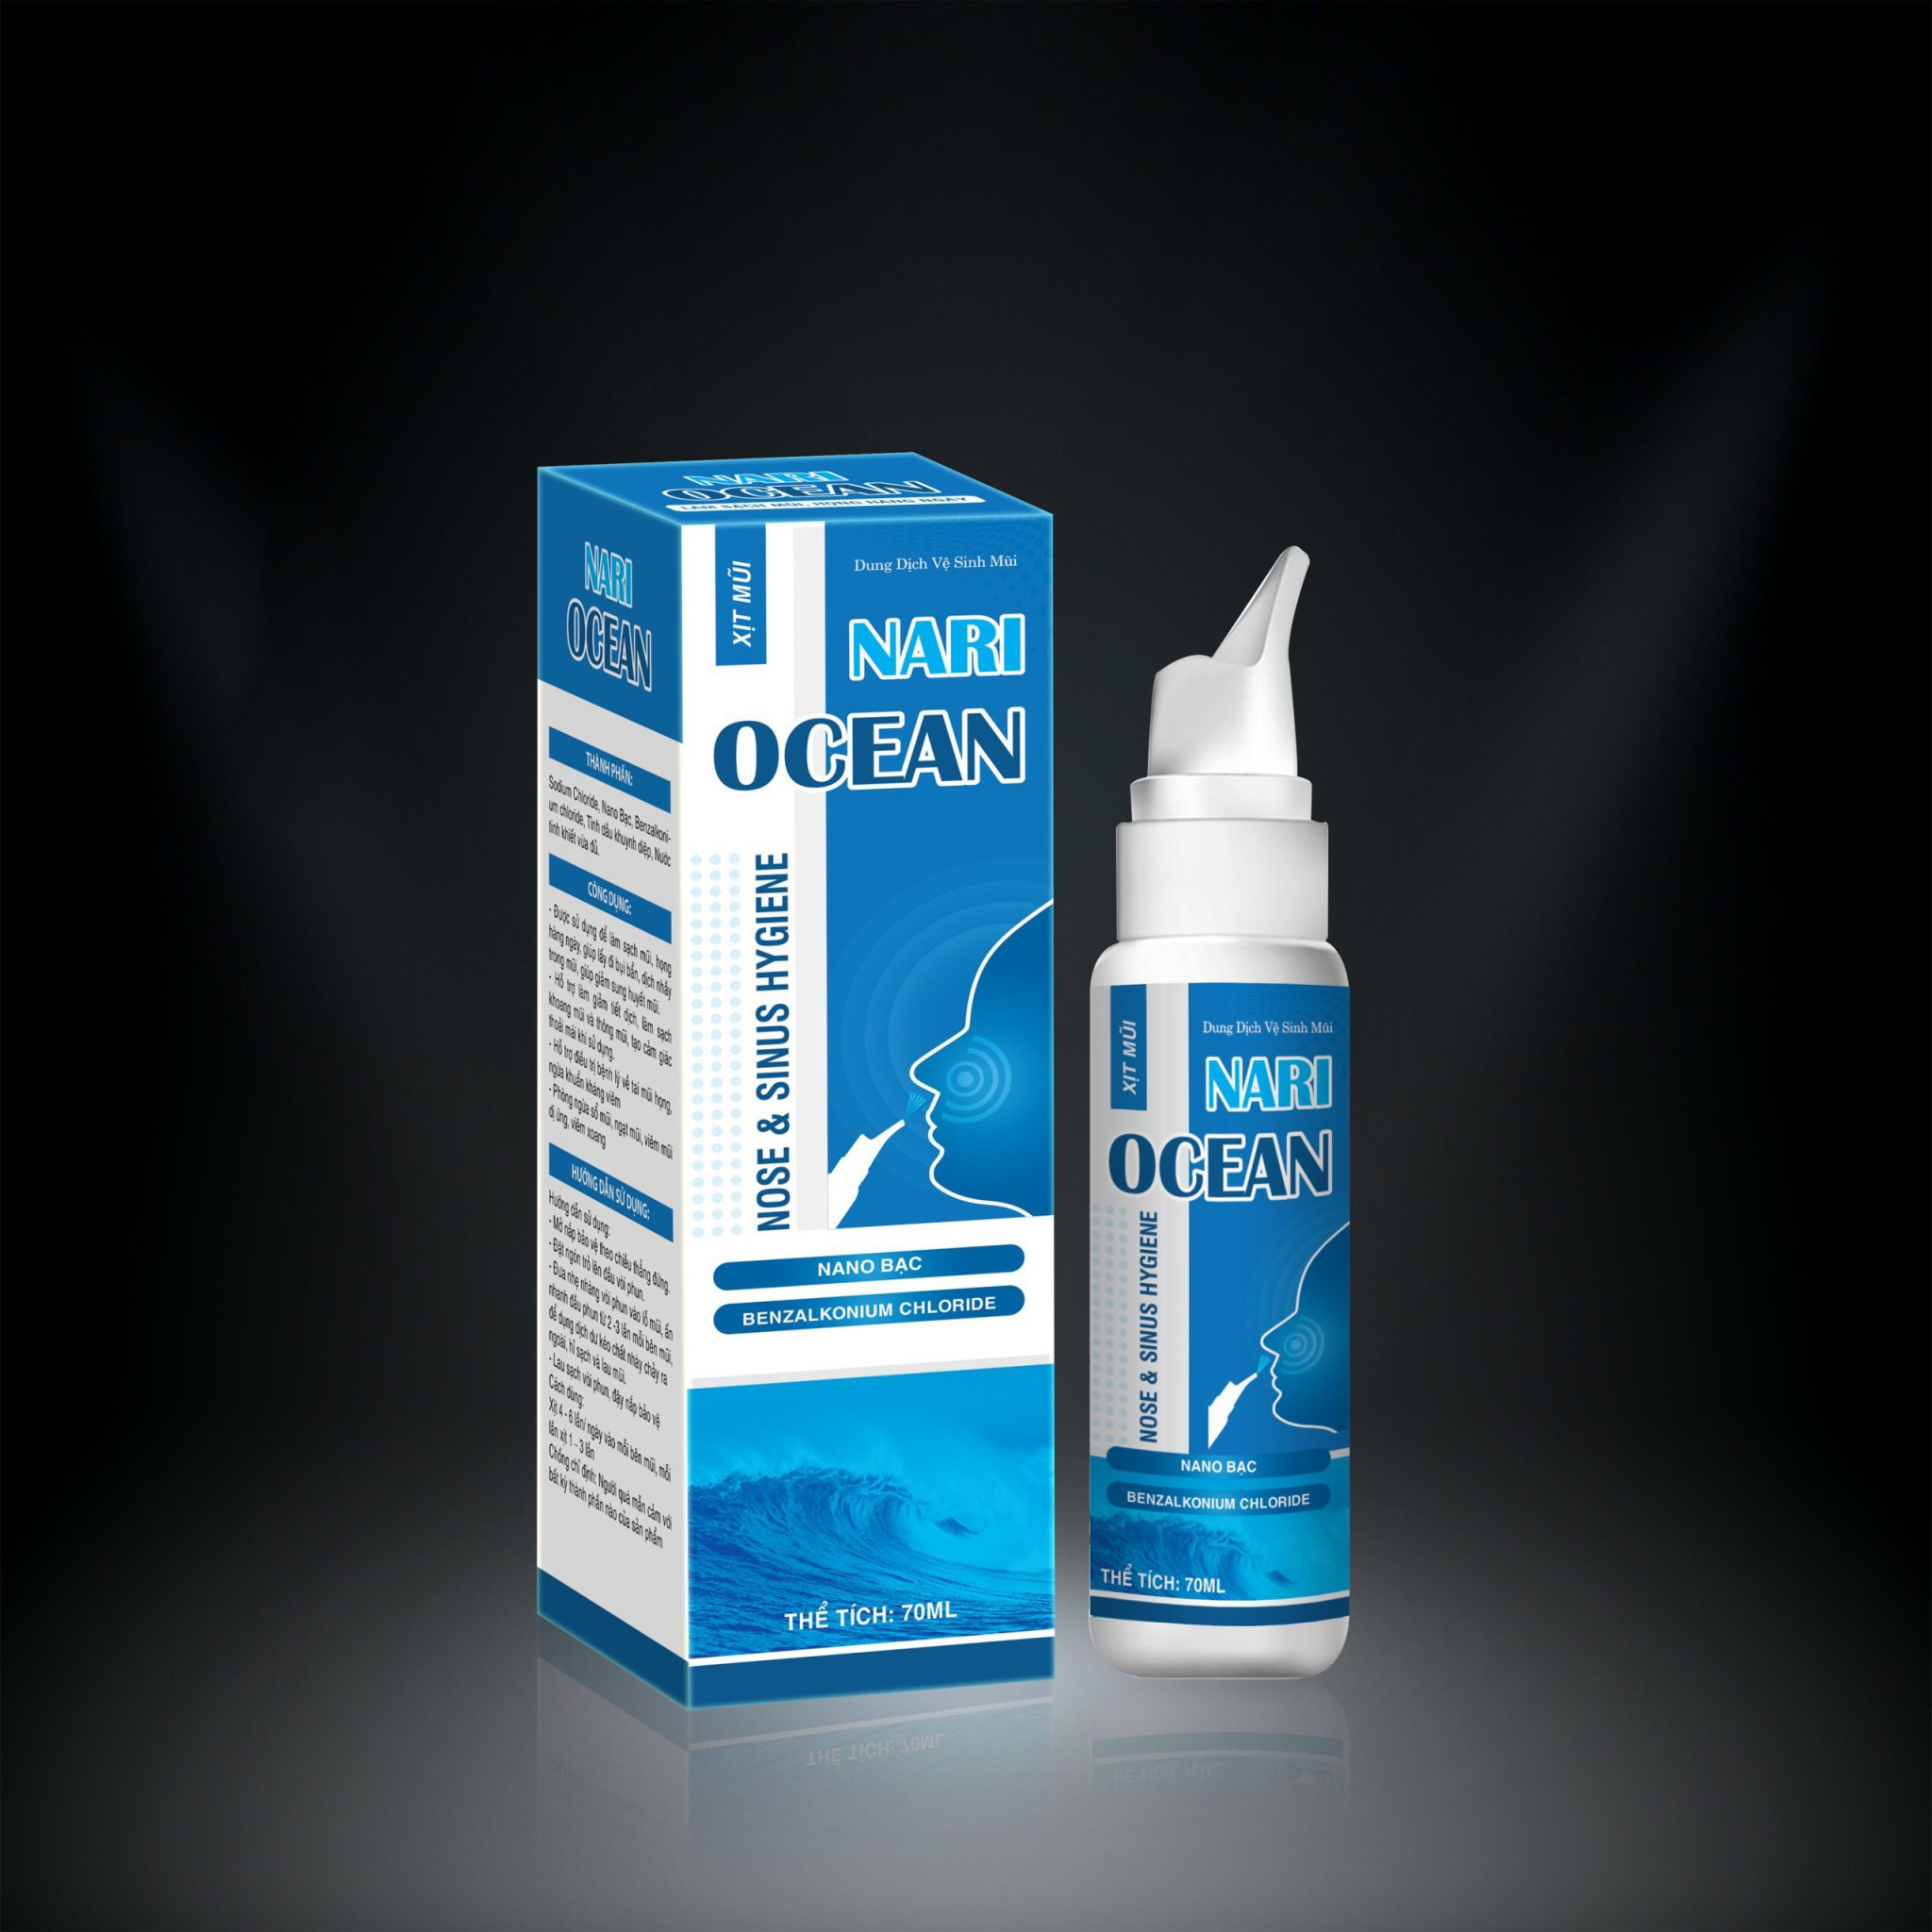 Xịt mũi Ocean chính hãng Nari với Nano Bạc và tinh dầu khuynh diệp giúp sạch vi khuẩn vi nấm đường hô hấp Giảm tiết dịch mũi , giúp khoang mũi thông thoáng , dễ thở , duy trì độ ẩm cho niêm mạc mũi lọ 70 ml